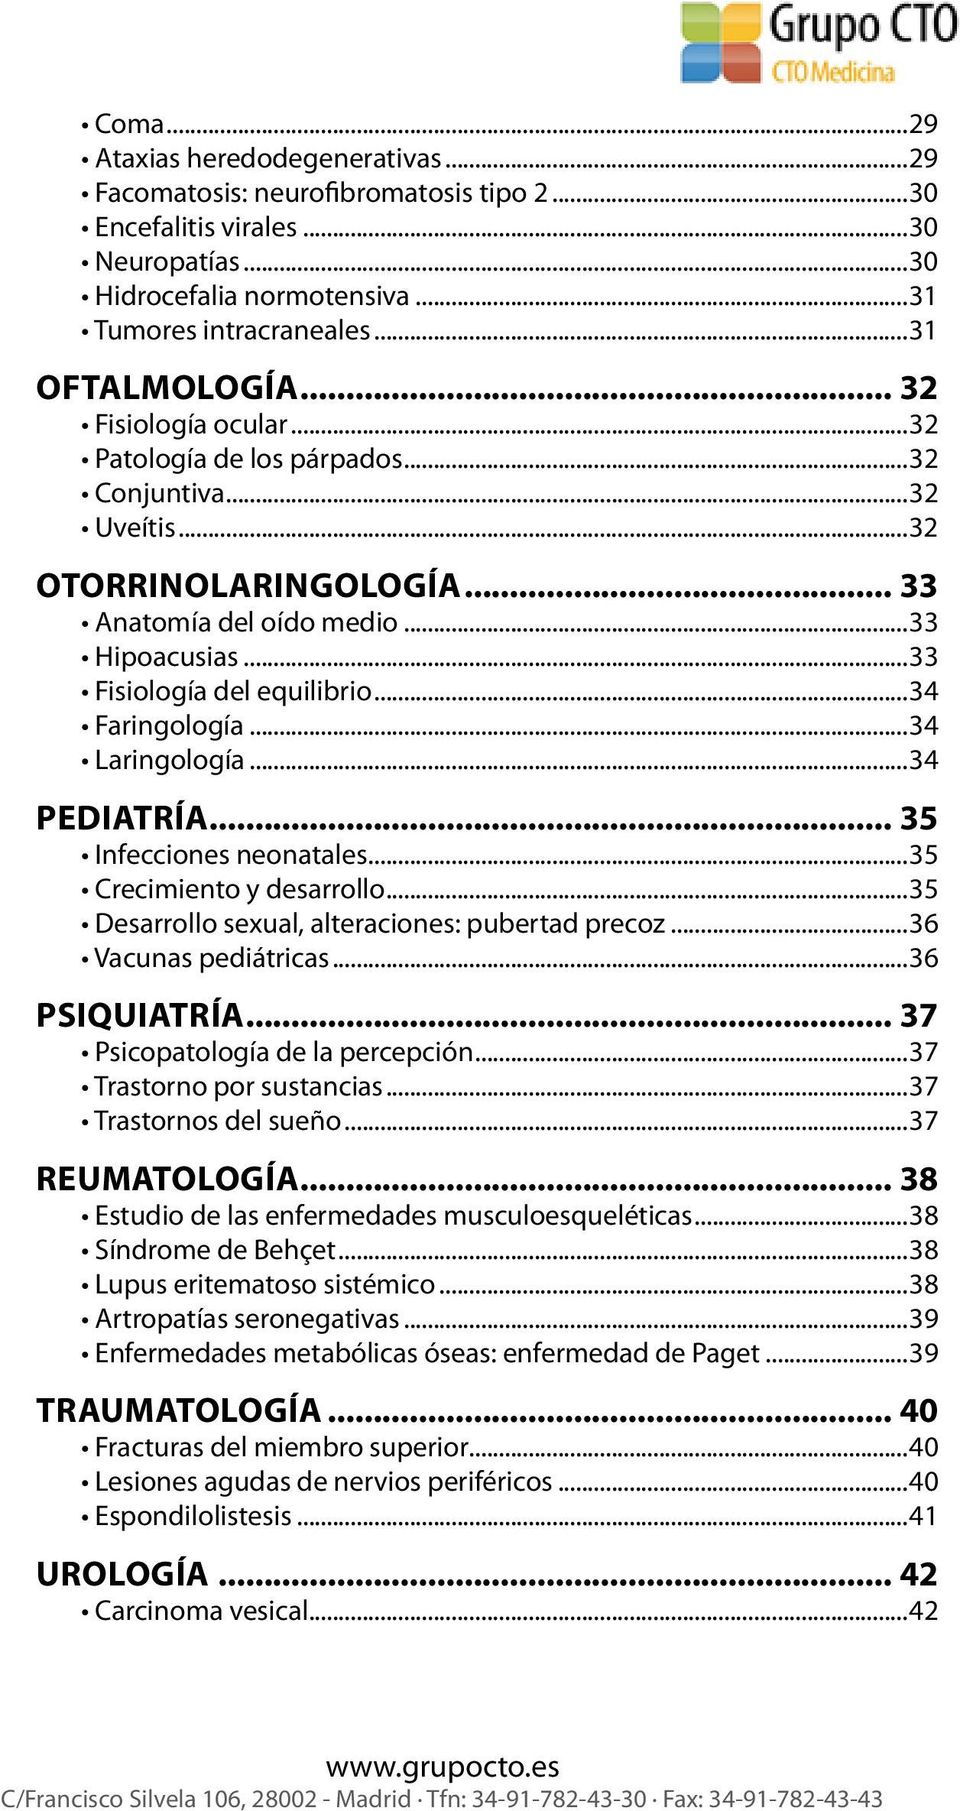 ..34 Faringología...34 Laringología...34 Pediatría... 35 Infecciones neonatales...35 Crecimiento y desarrollo...35 Desarrollo sexual, alteraciones: pubertad precoz...36 Vacunas pediátricas.